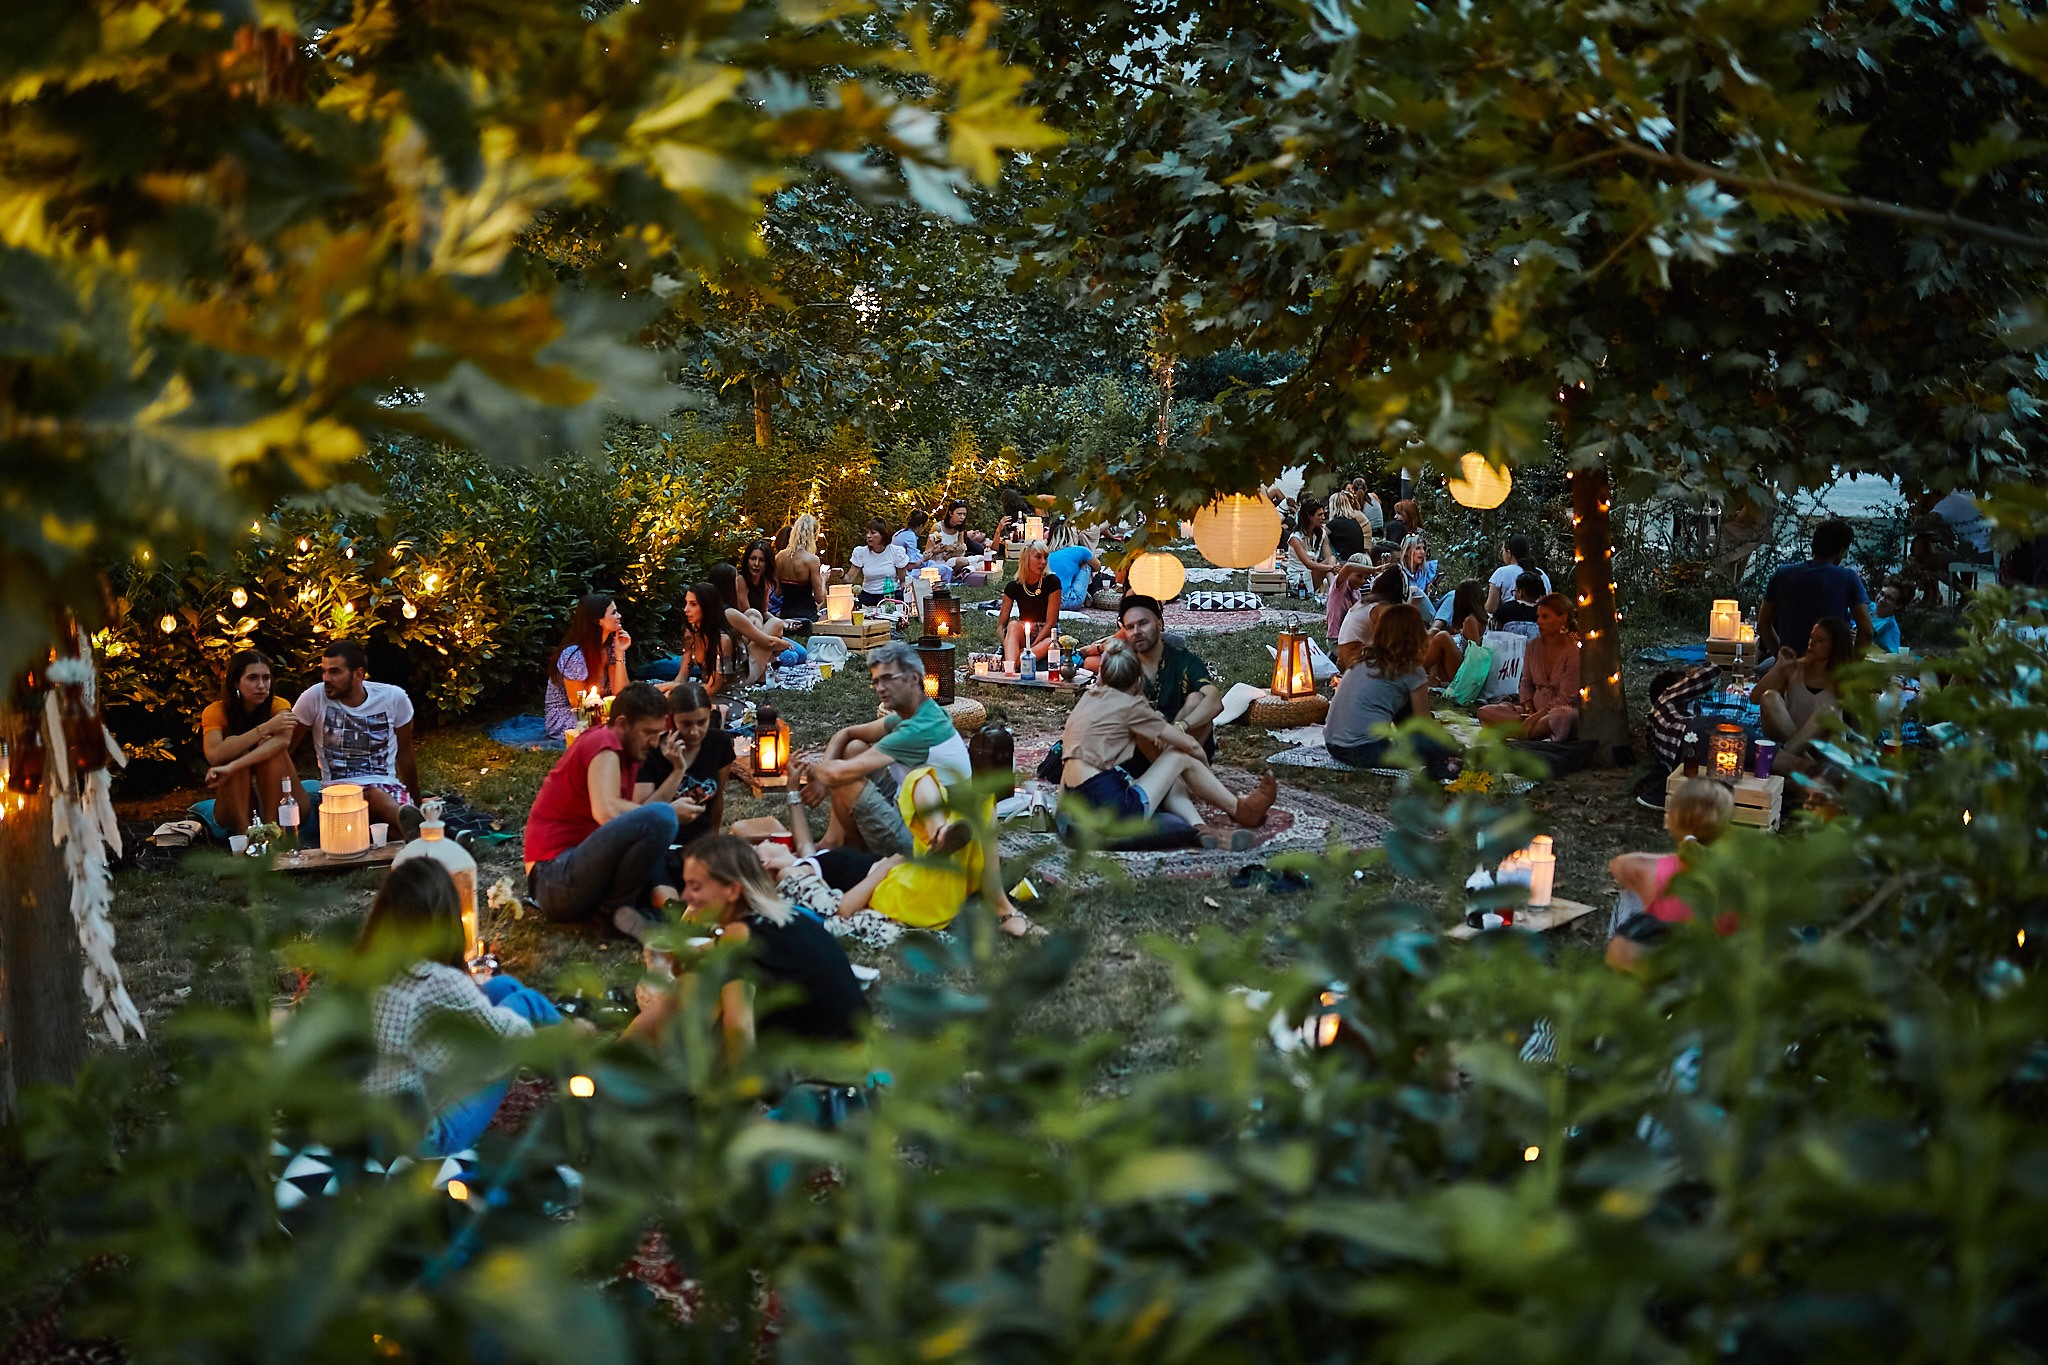 Danas kreće Mali piknik na Gornjem gradu – omiljena ljetna piknik priča